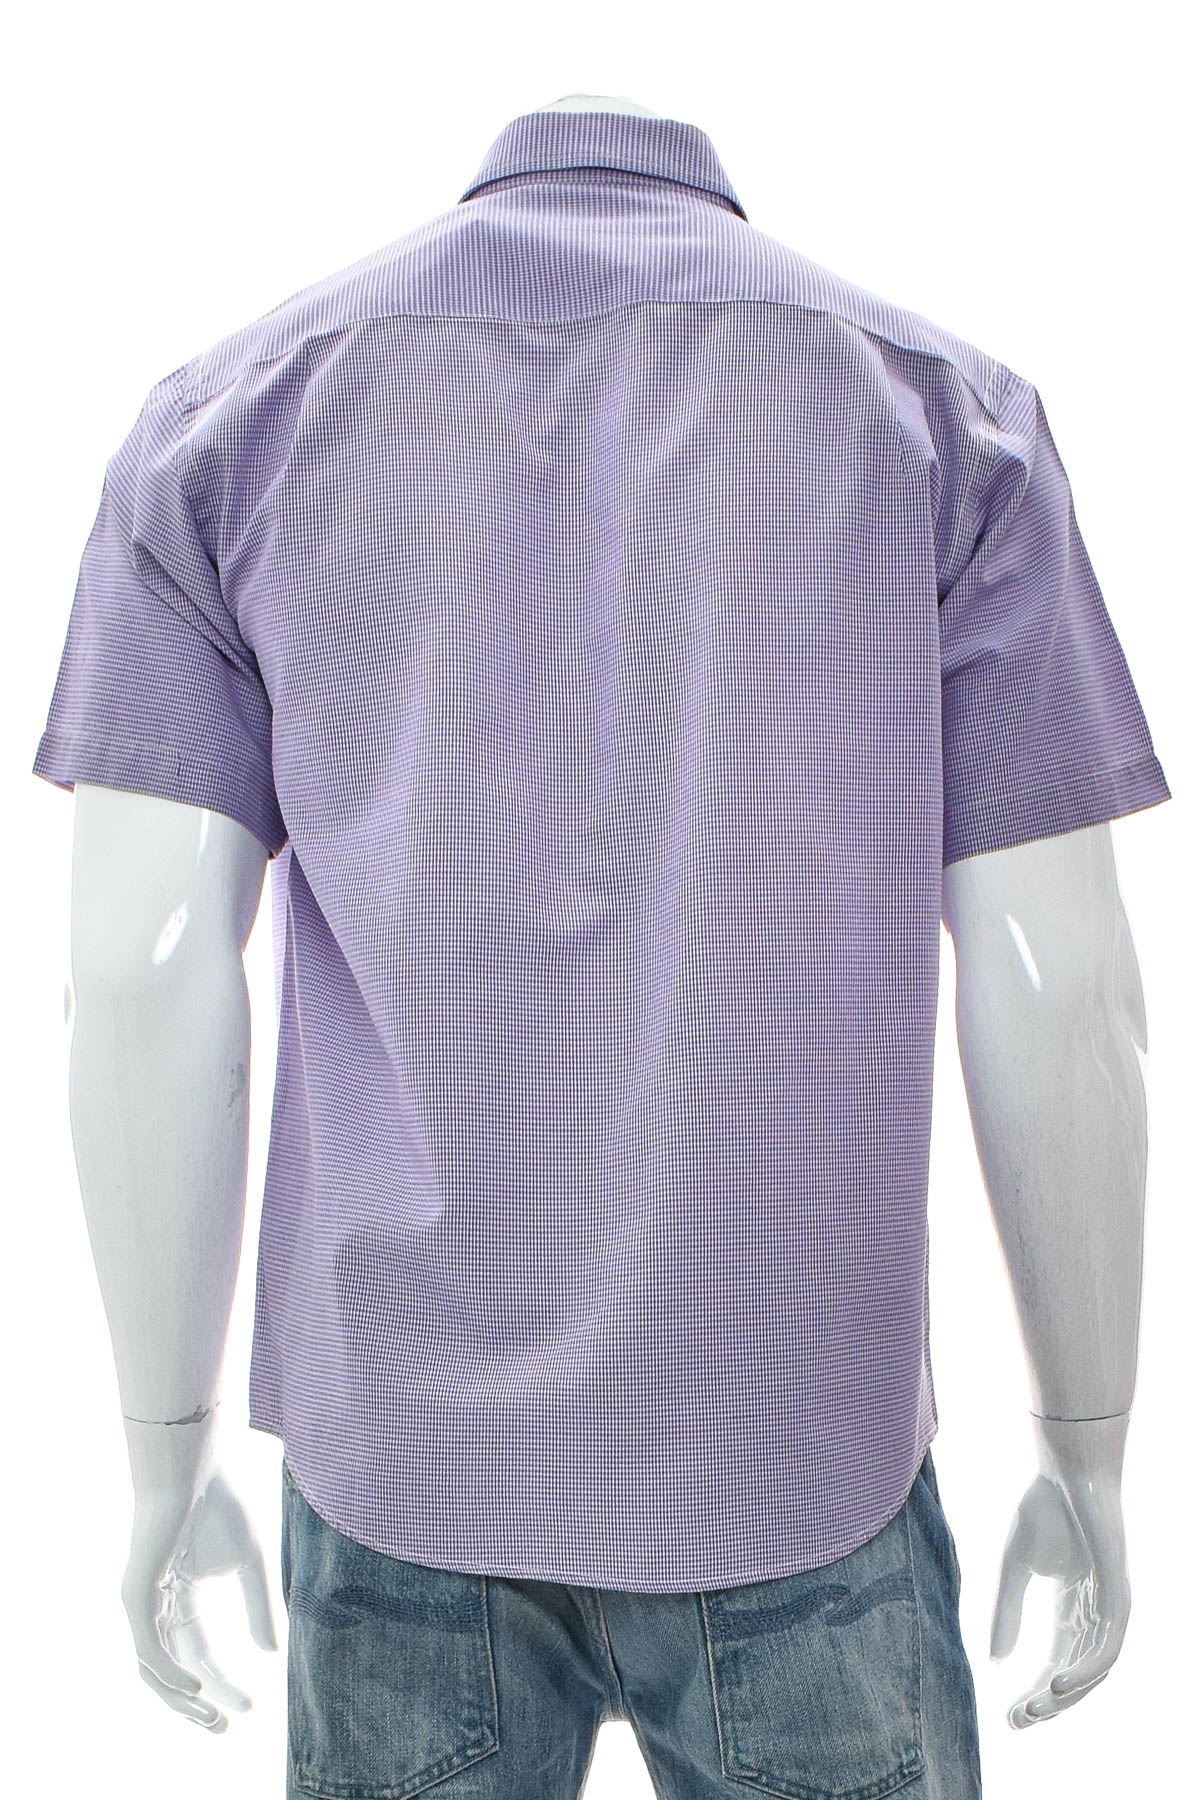 Ανδρικό πουκάμισο - Secolo - 1